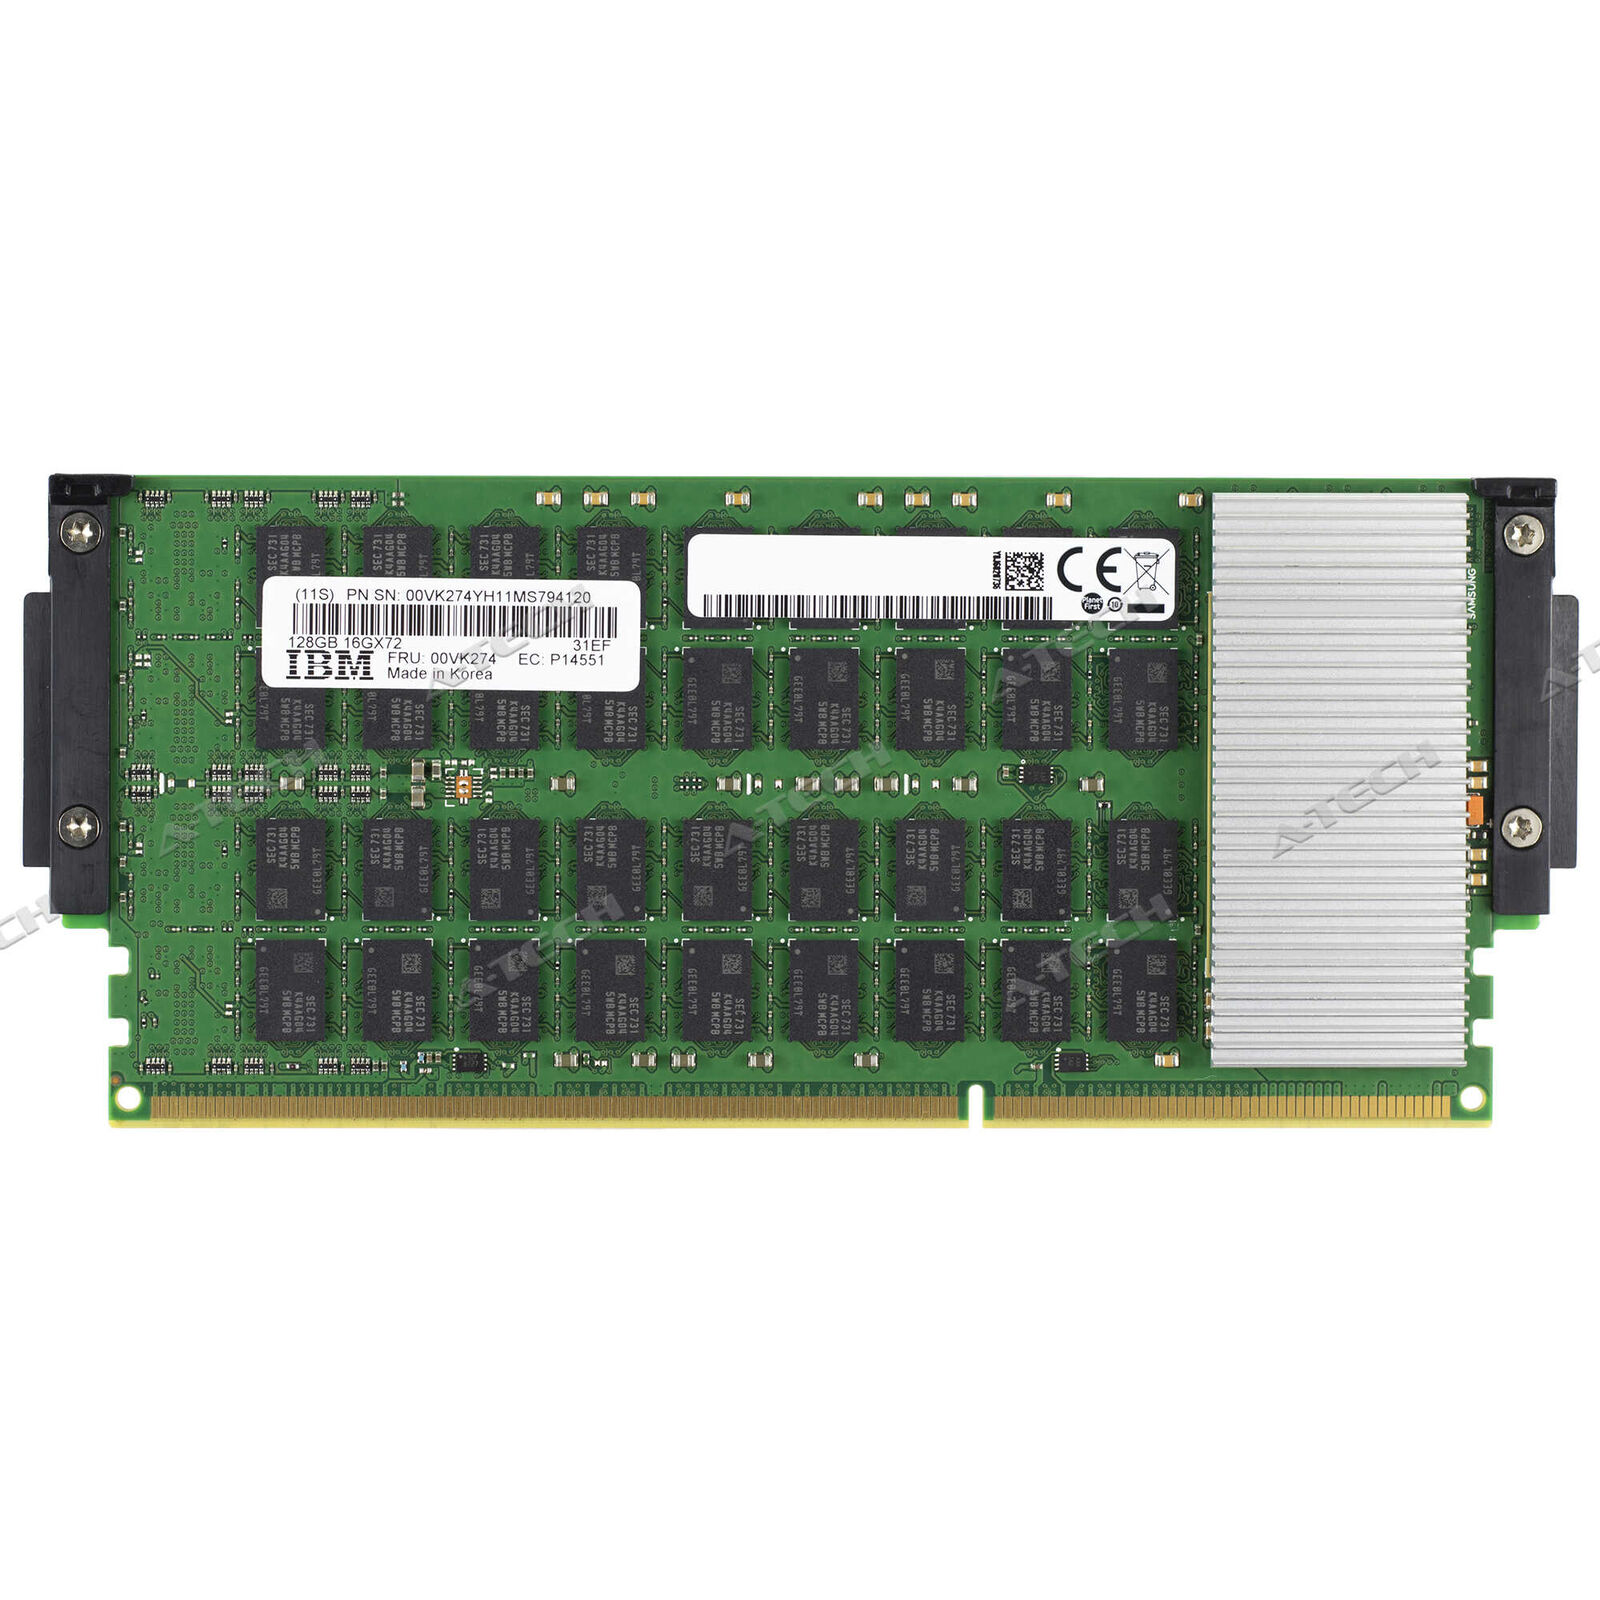 IBM-Lenovo 00VK274 128GB DDR4 CDIMM 16Gx72 Cartridge IBM Power Server Memory RAM